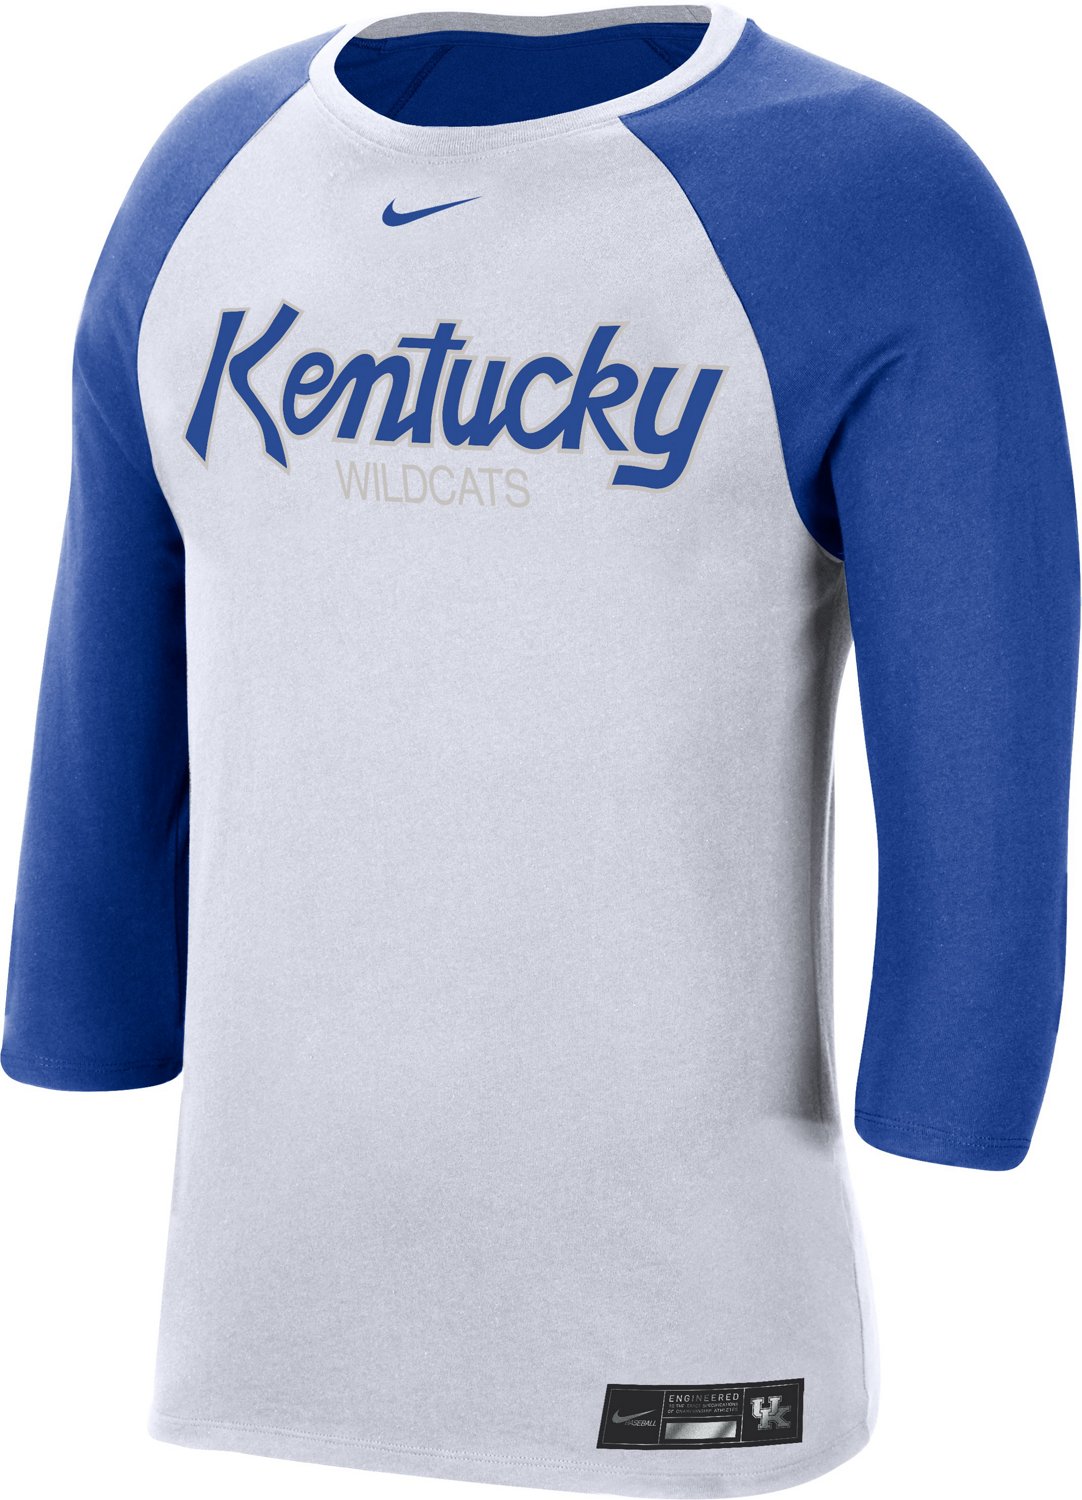 university of kentucky baseball jersey